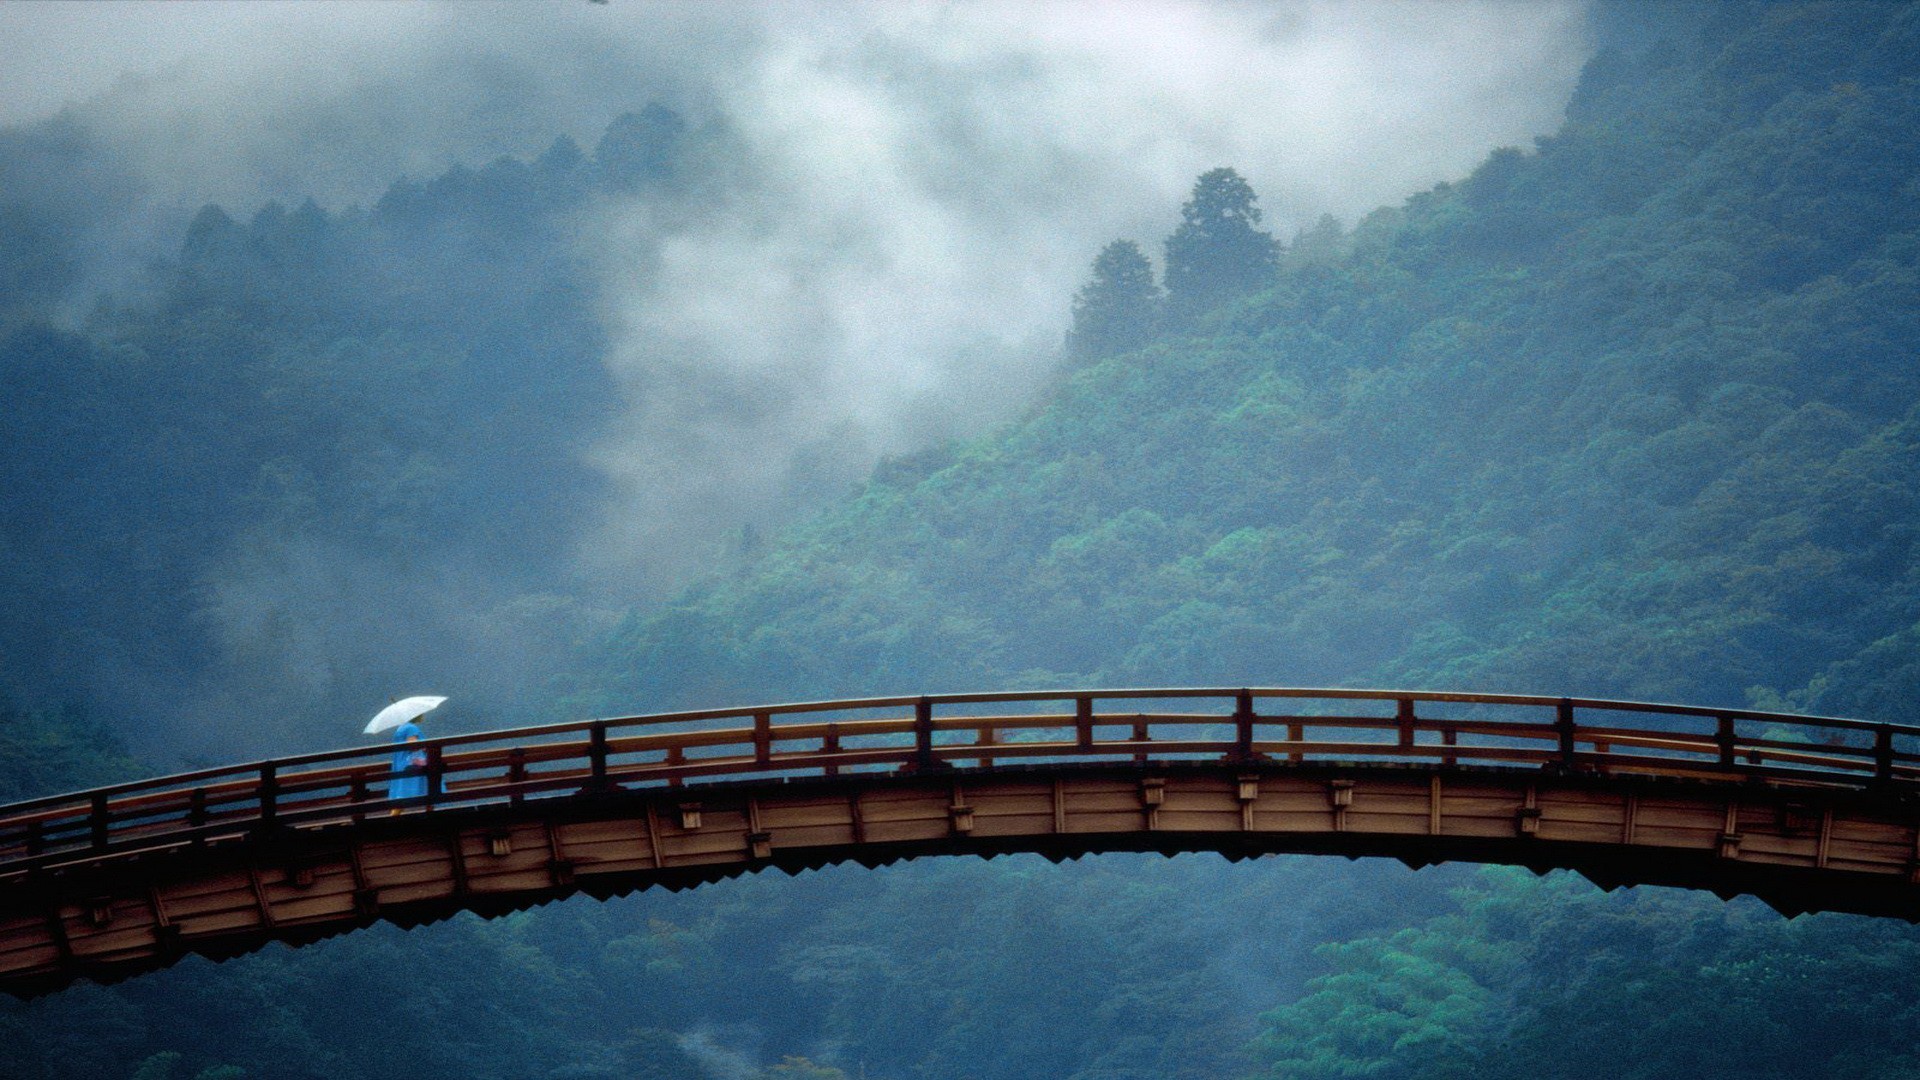 General 1920x1080 bridge mist China umbrella Asia nature outdoors